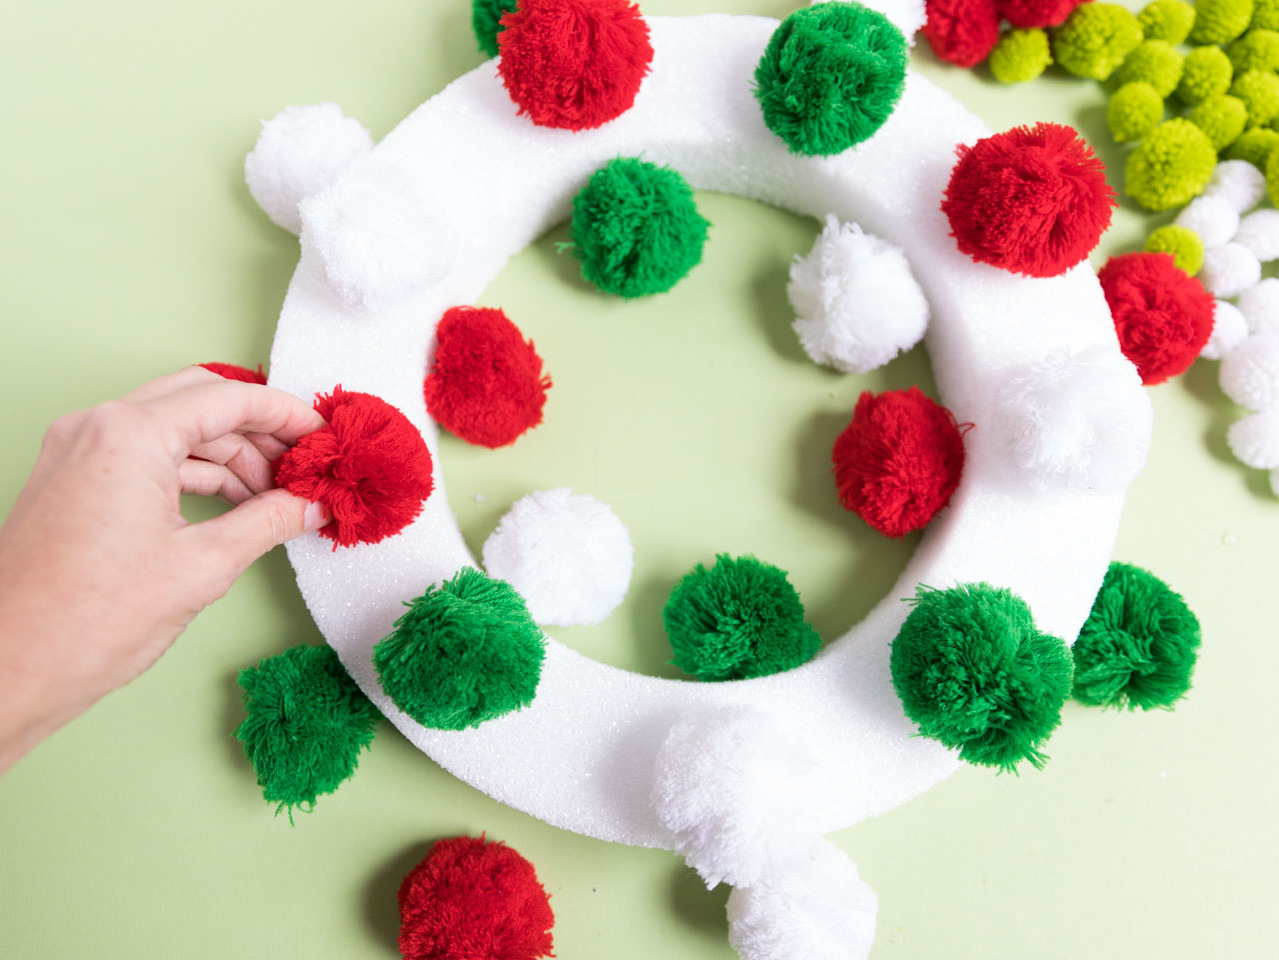 DIY Yarn Christmas Pom Pom Wreath - That Craft Site - fun and easy